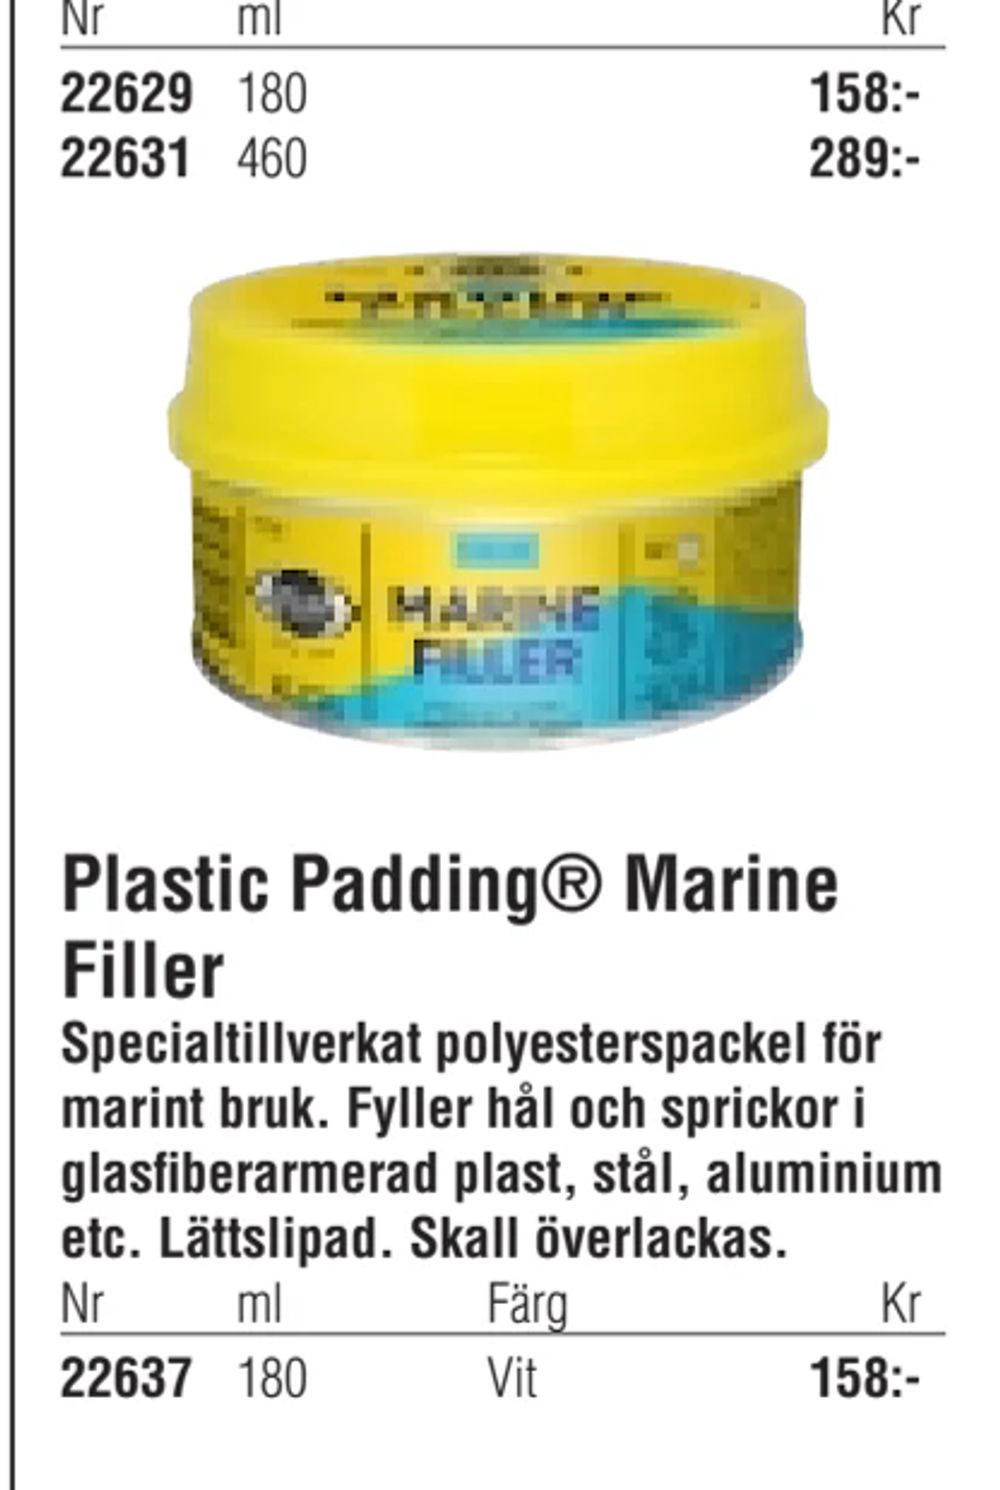 Erbjudanden på Plastic Padding® Marine Filler från Erlandsons Brygga för 158 kr